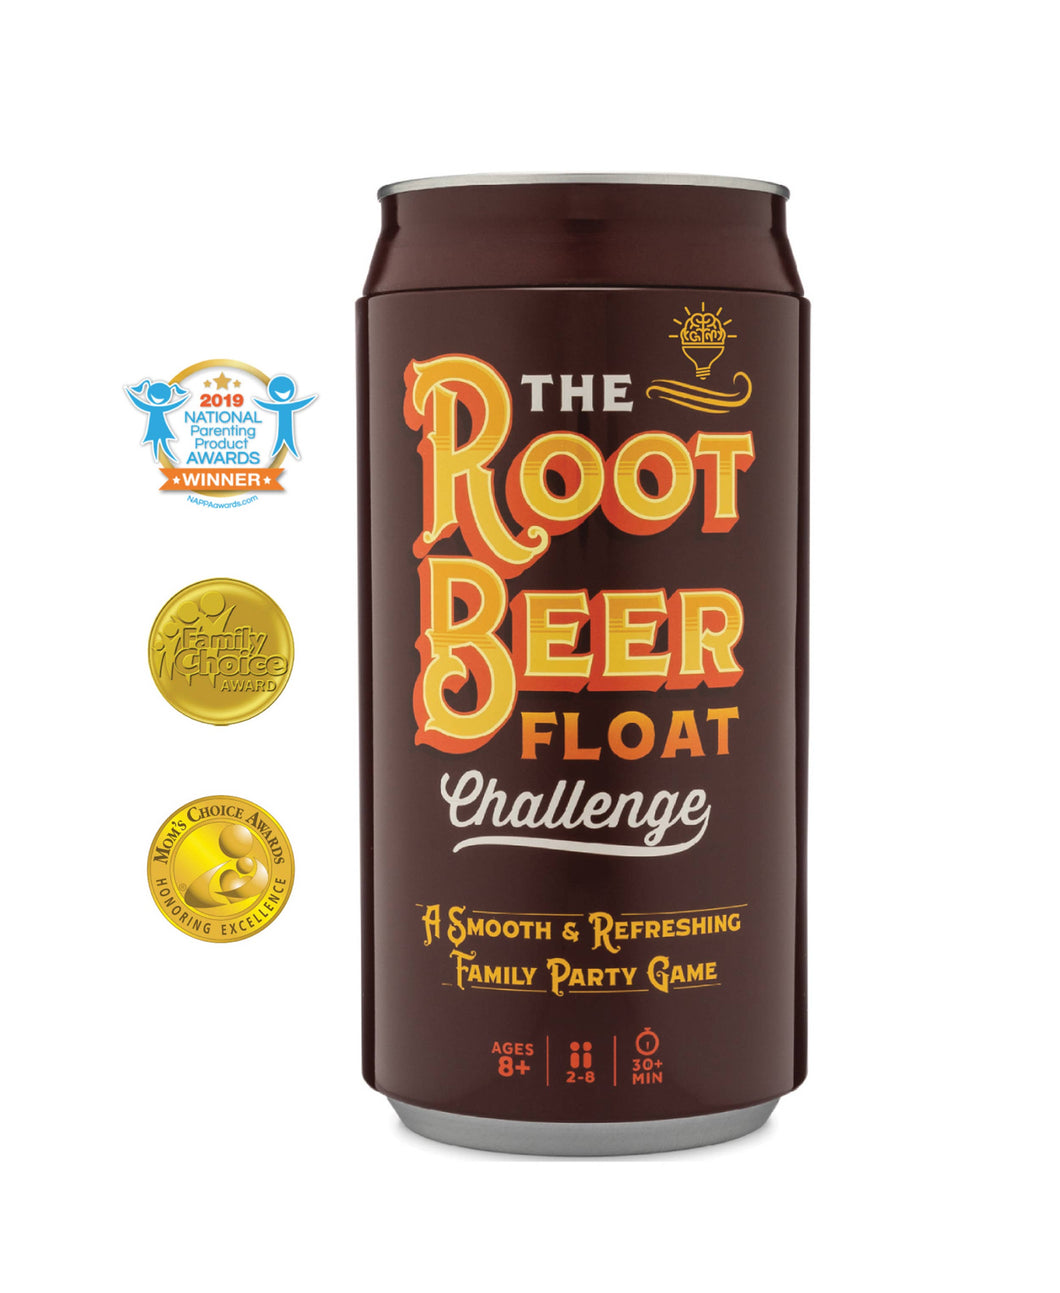 The Root Beer Float Challenge